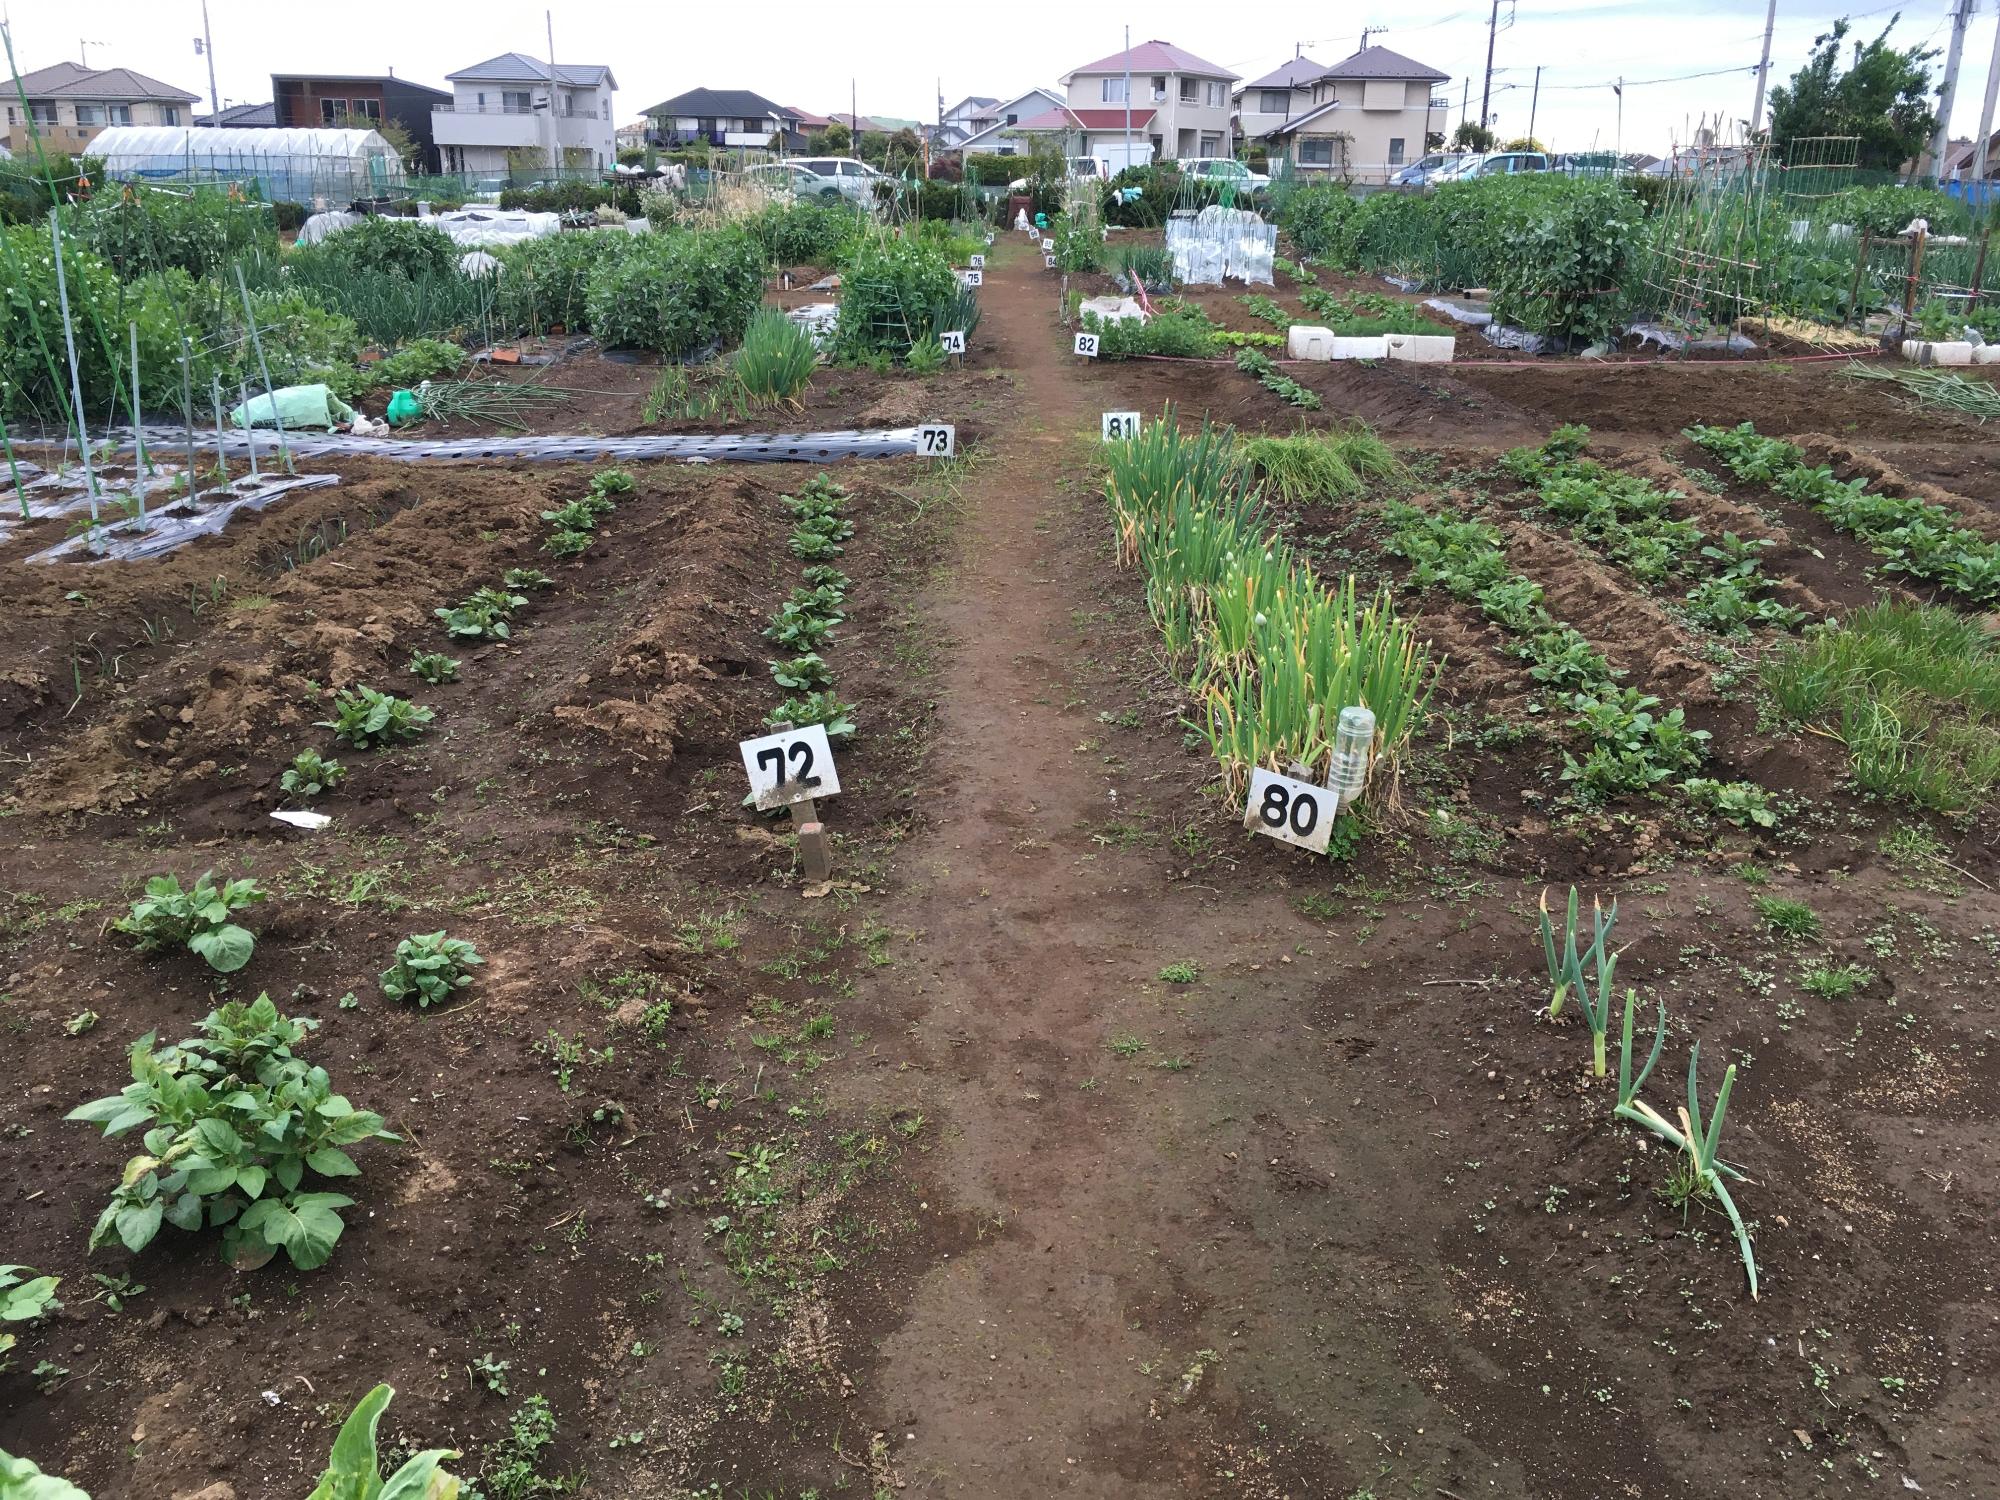 所々に野菜が植えられ、番号のついた札が立ててある生谷市民農園の写真